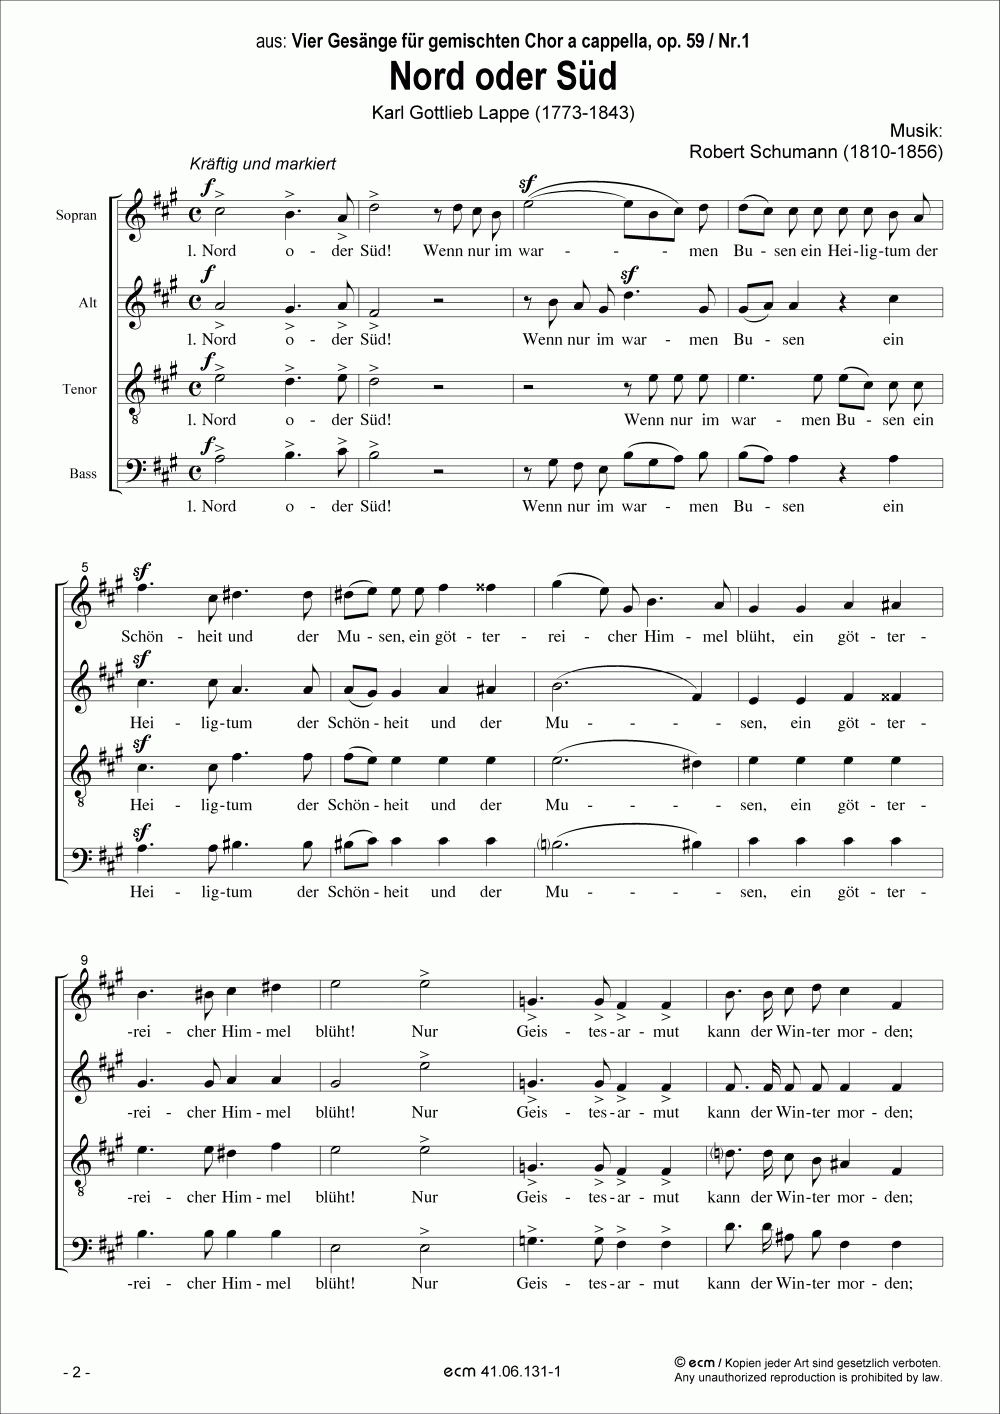 Nord oder Süd (op.59, Nr.1)